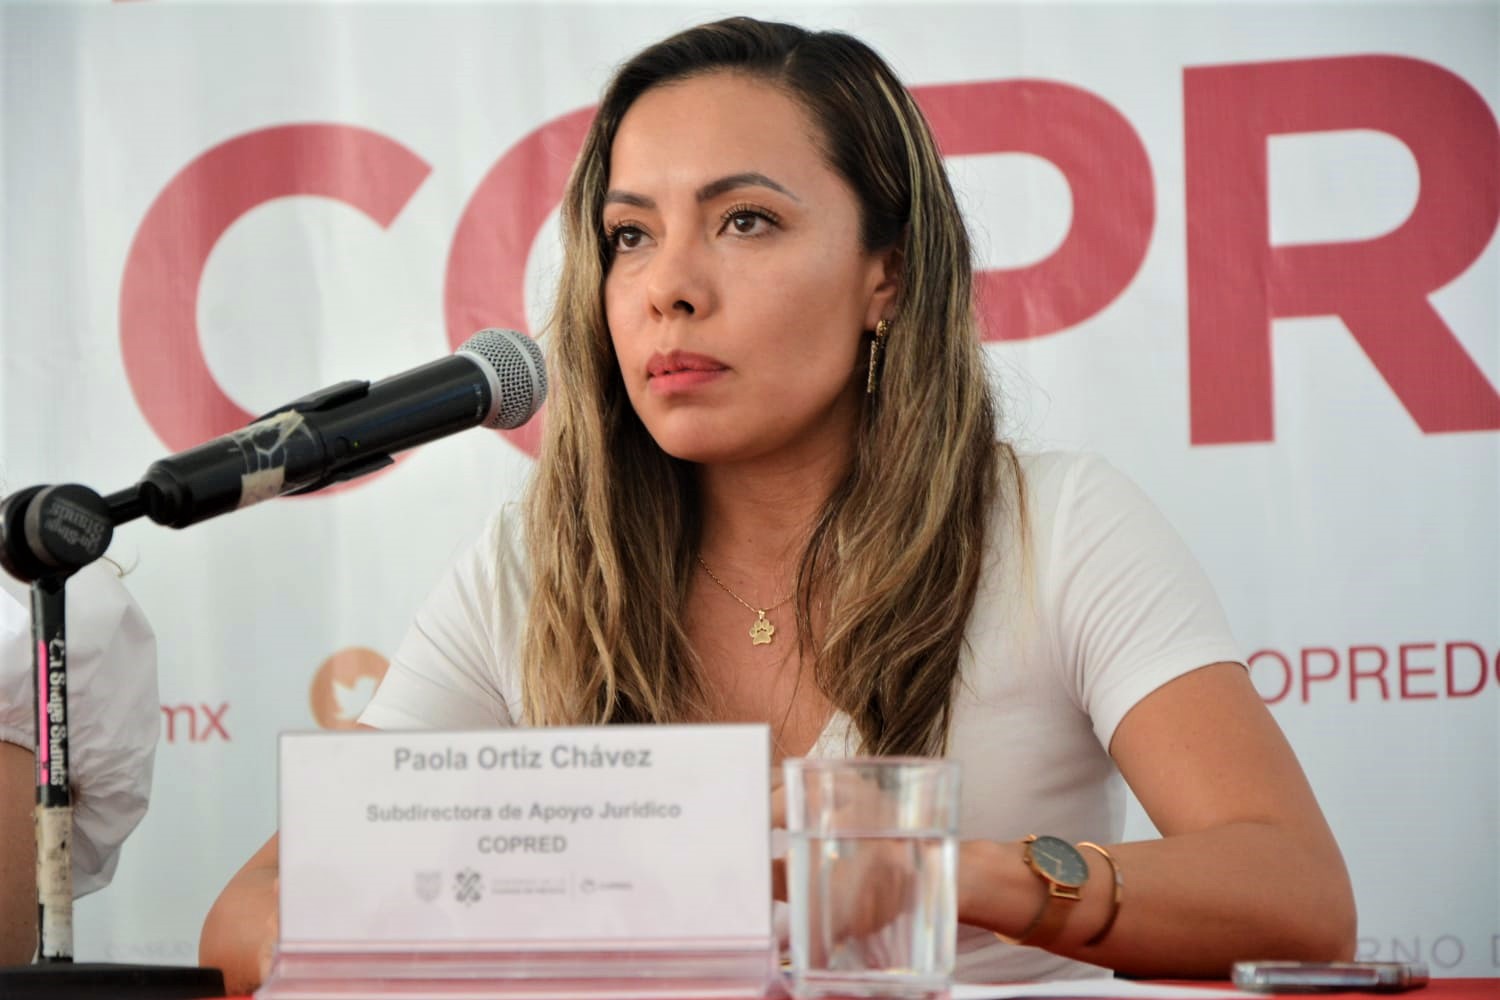 Paola Ortiz Chávez, Subdirectora de Apoyo Jurídico del COPRED.